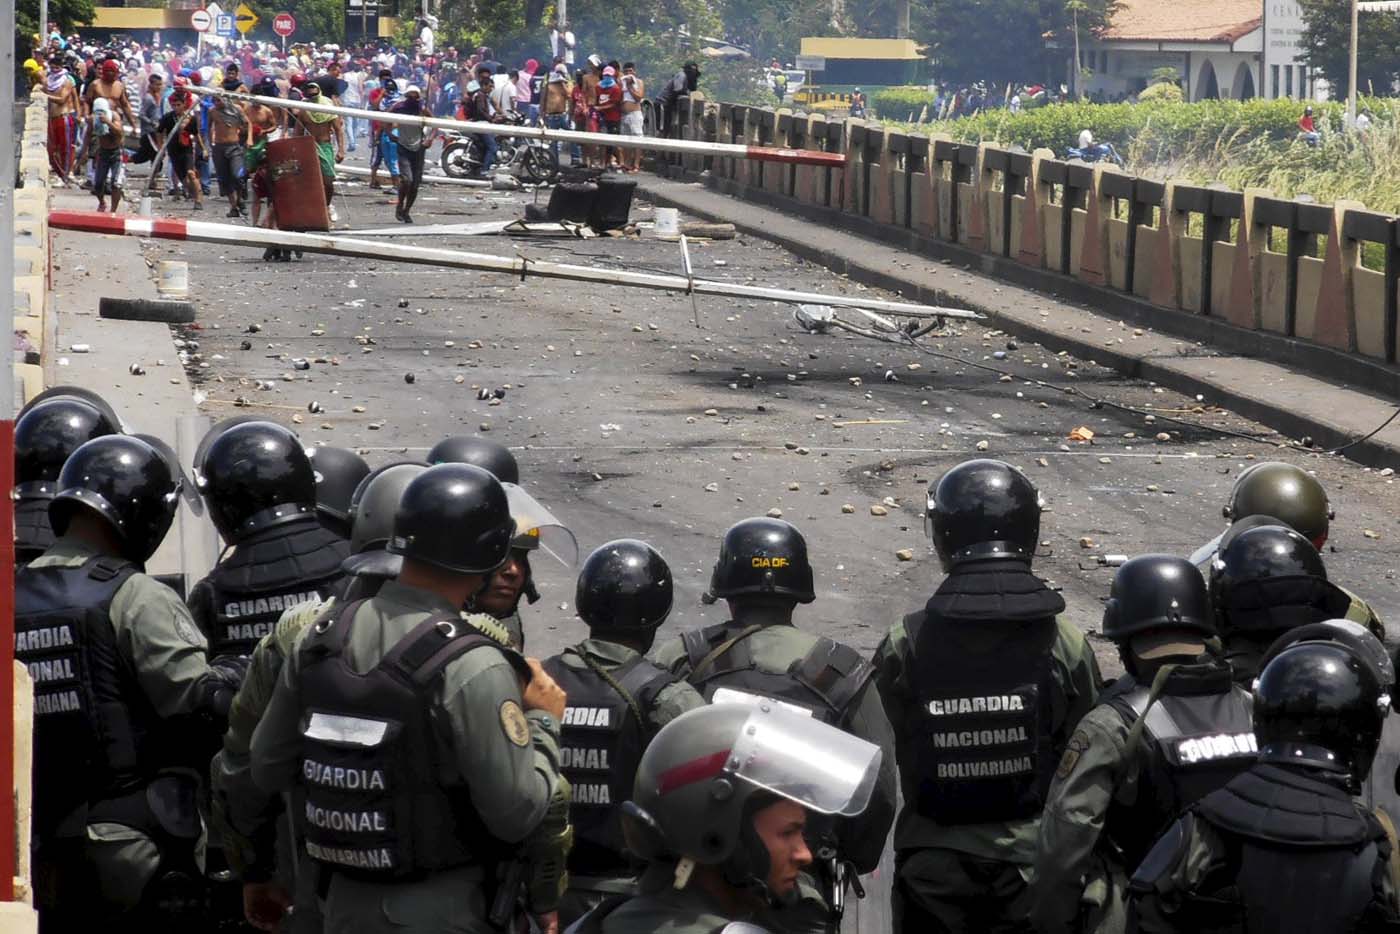 problema migratorio en Venezuela - Página 12 2015-07-29T233148Z_1168177636_GF20000008312_RTRMADP_3_VENEZUELA-PROTEST